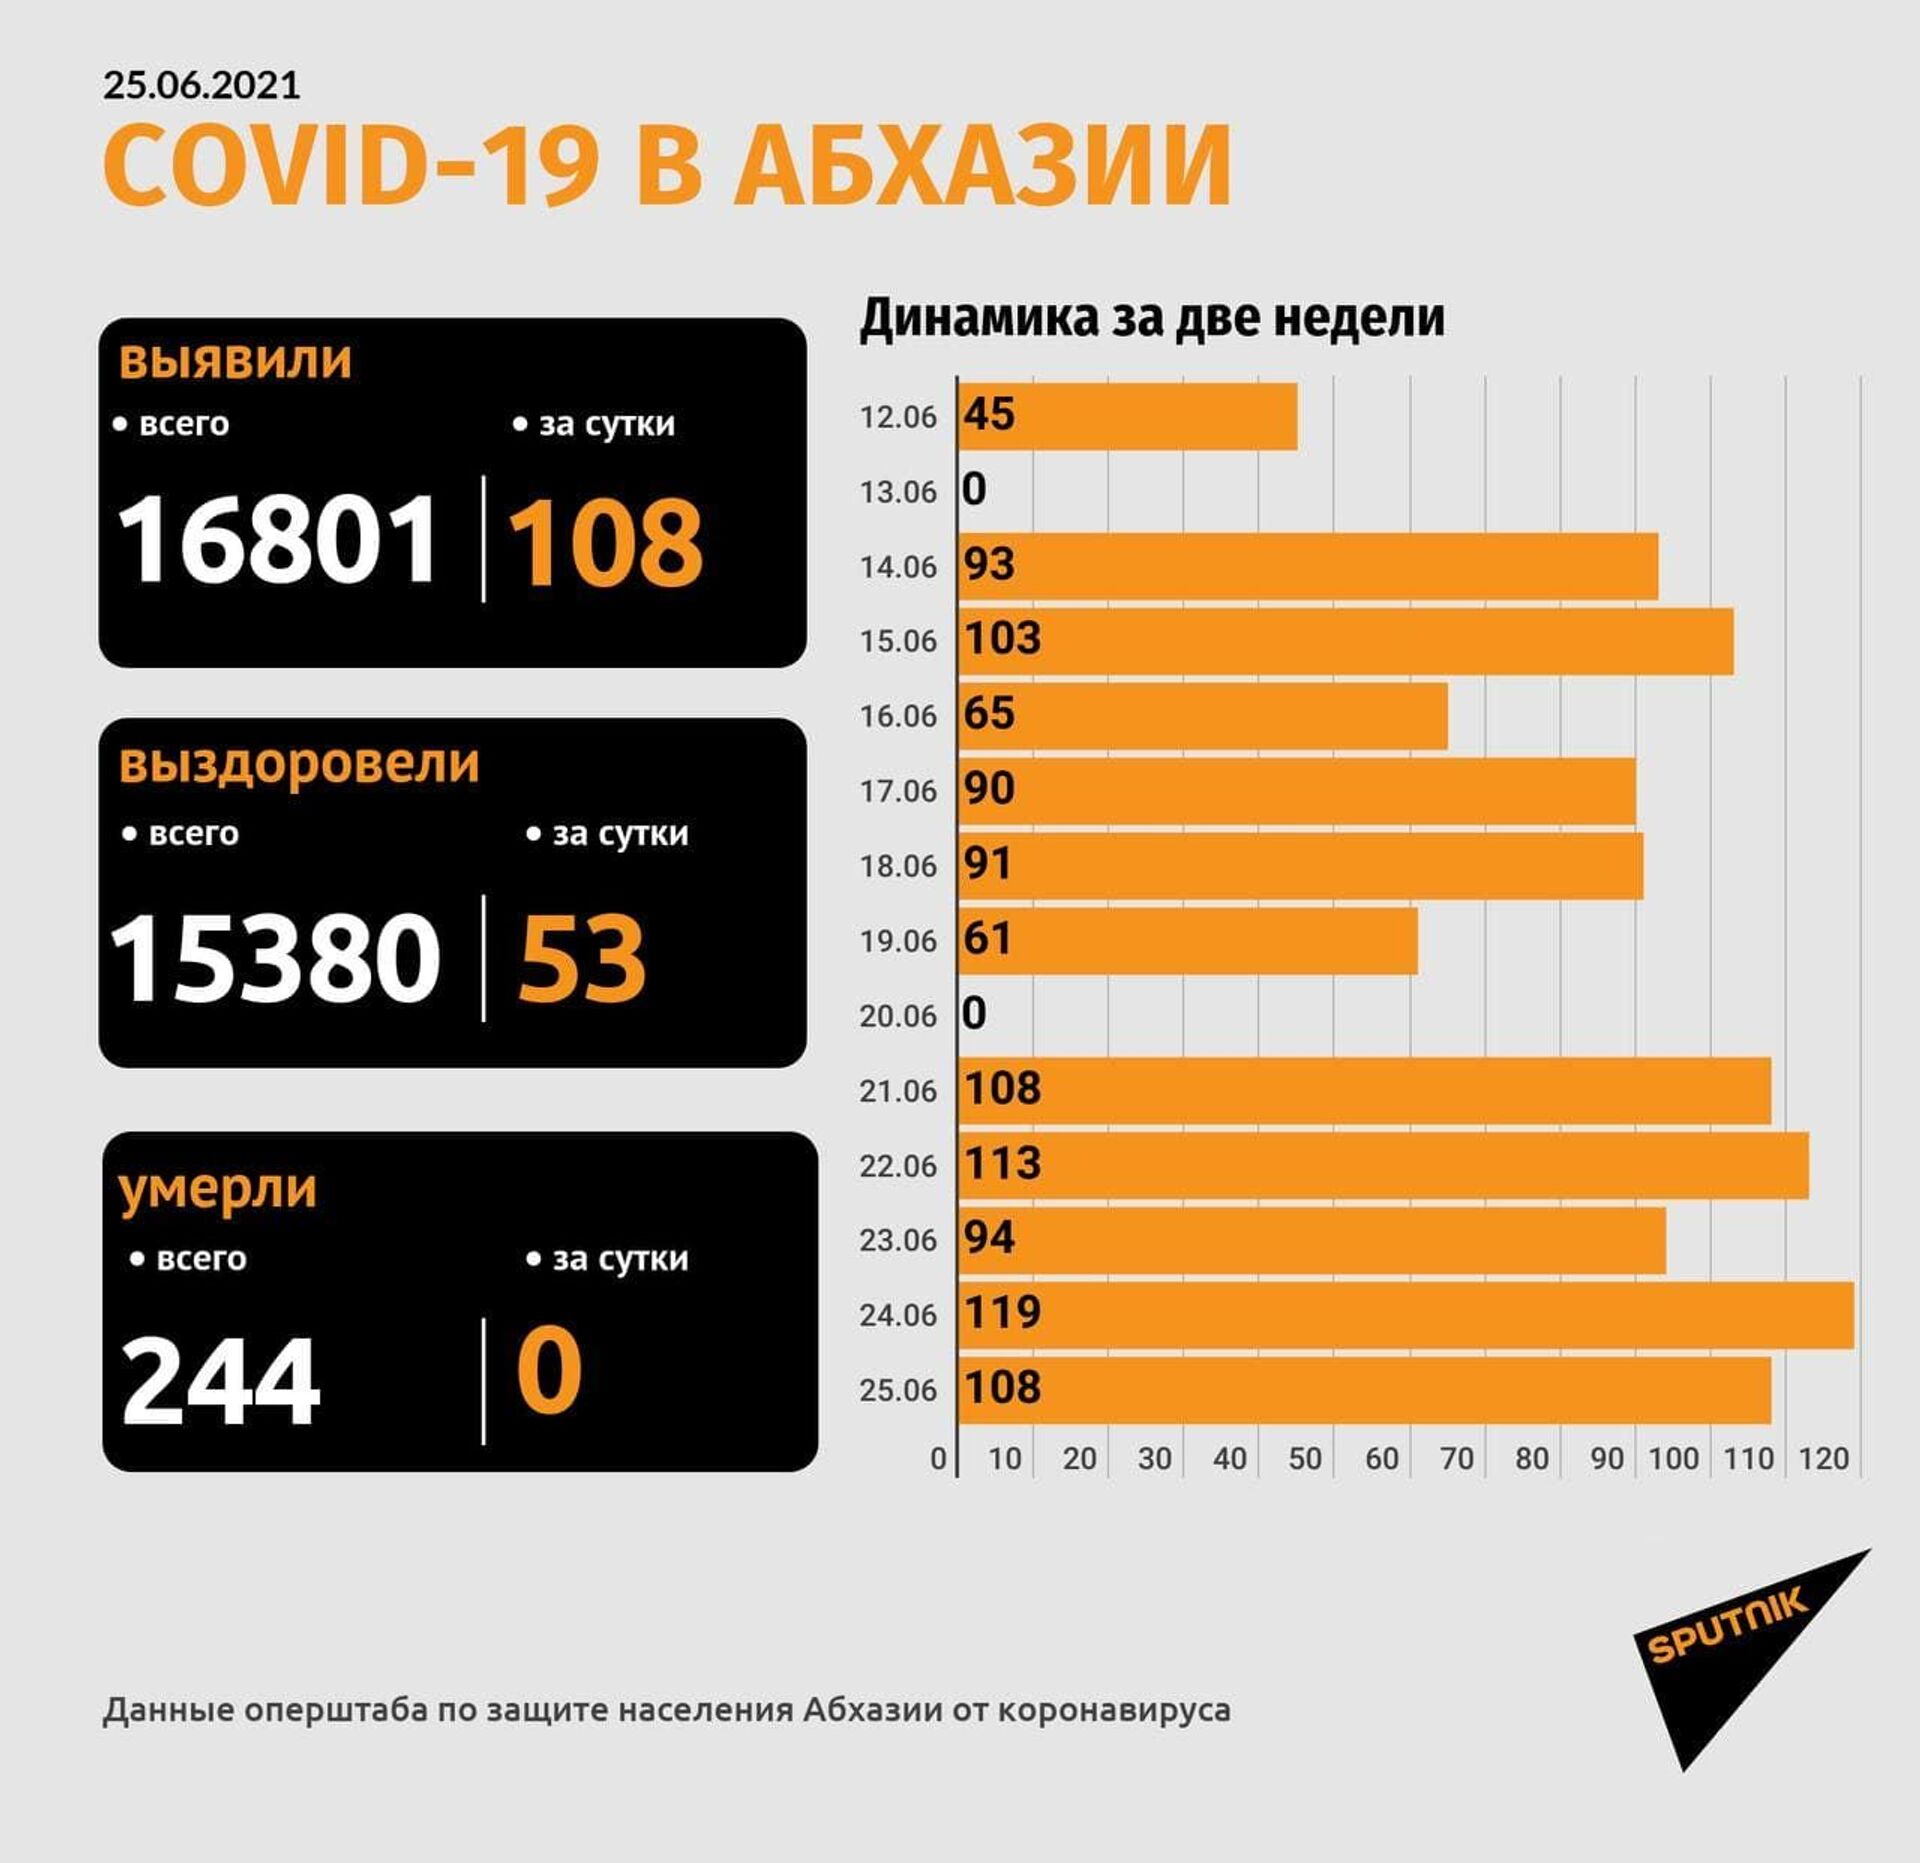 Коронавирус диагностирован у 108  человек в Абхазии за сутки - Sputnik Абхазия, 1920, 25.06.2021